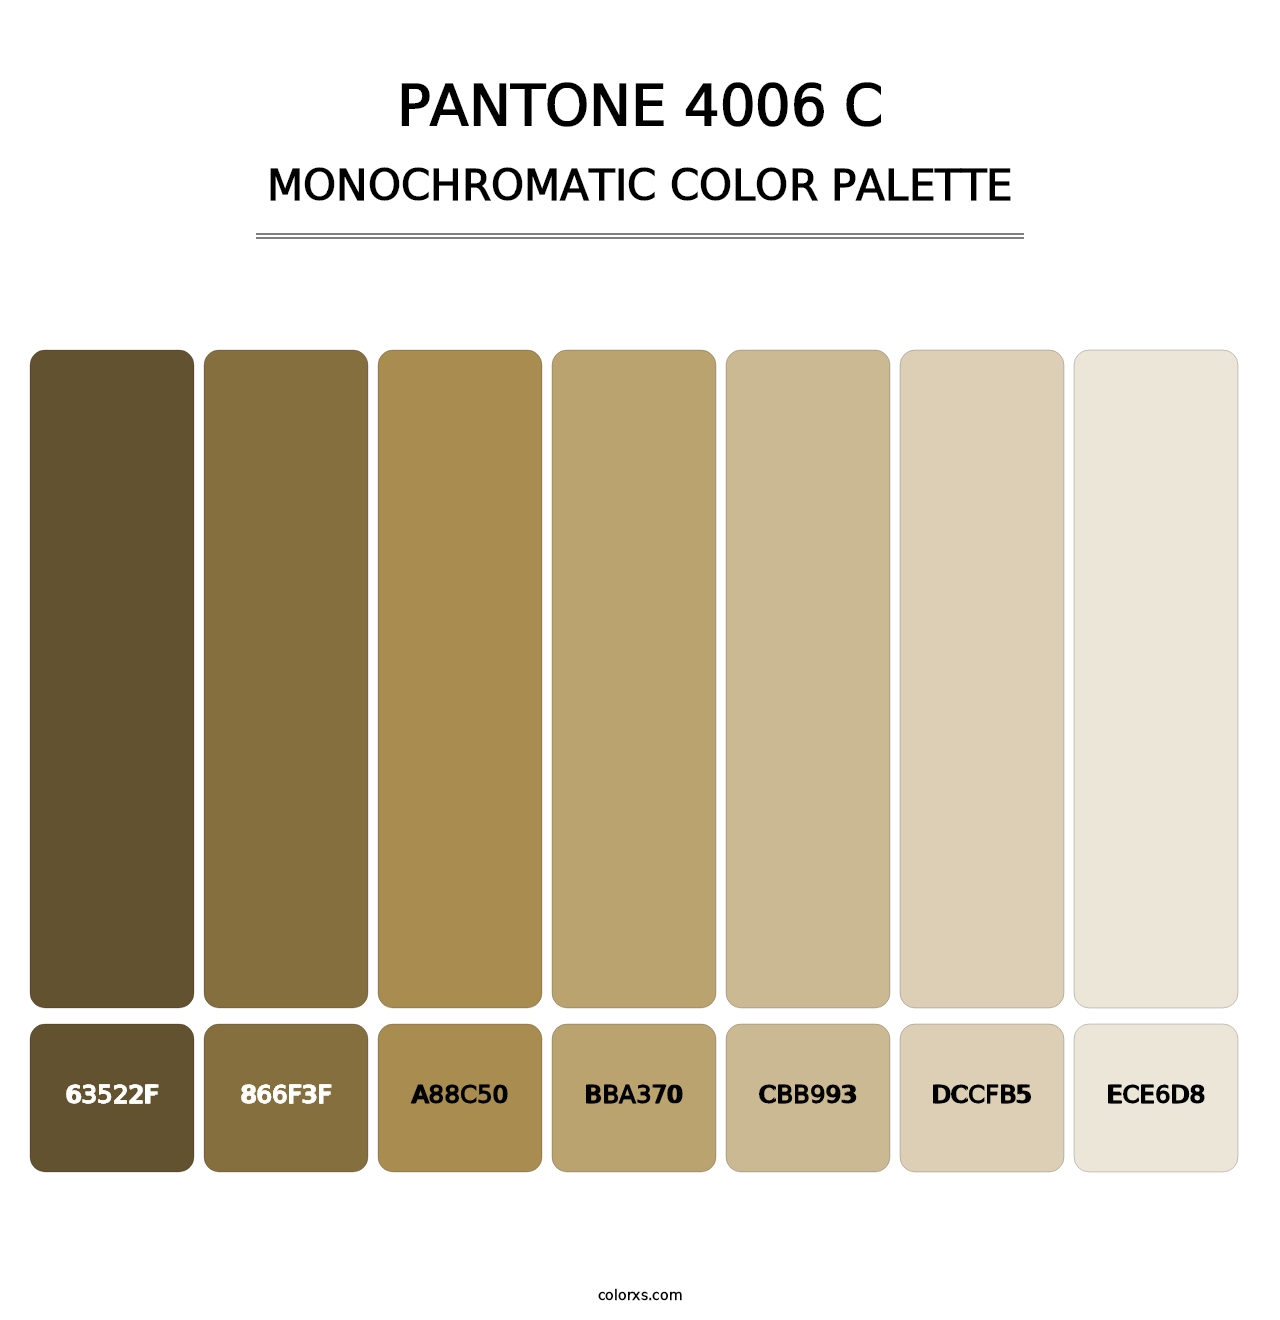 PANTONE 4006 C - Monochromatic Color Palette